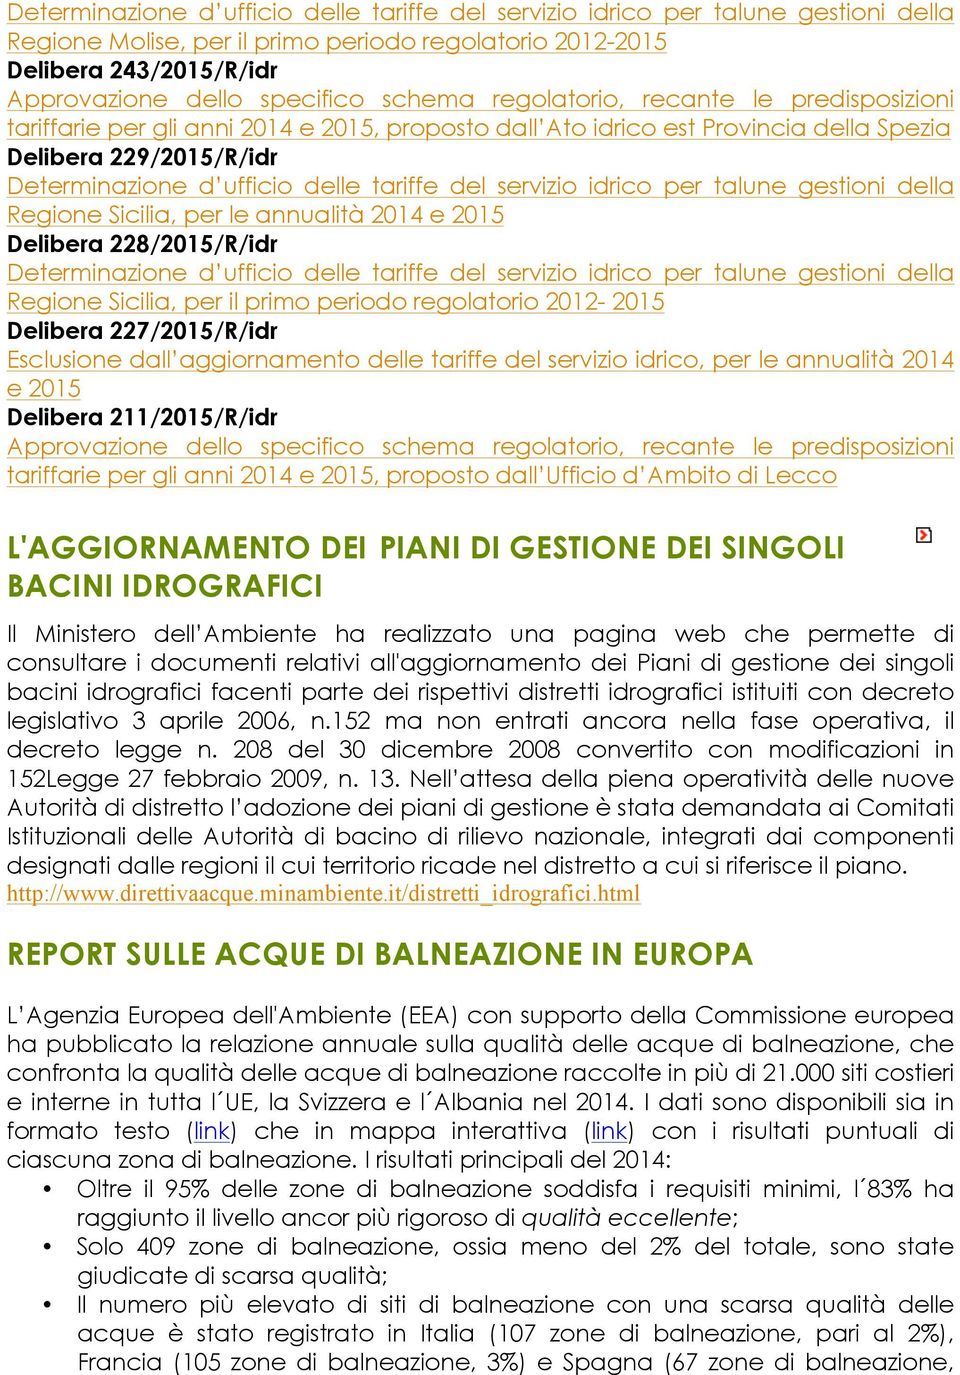 del servizio idrico per talune gestioni della Regione Sicilia, per le annualità 2014 e 2015 Delibera 228/2015/R/idr Determinazione d ufficio delle tariffe del servizio idrico per talune gestioni